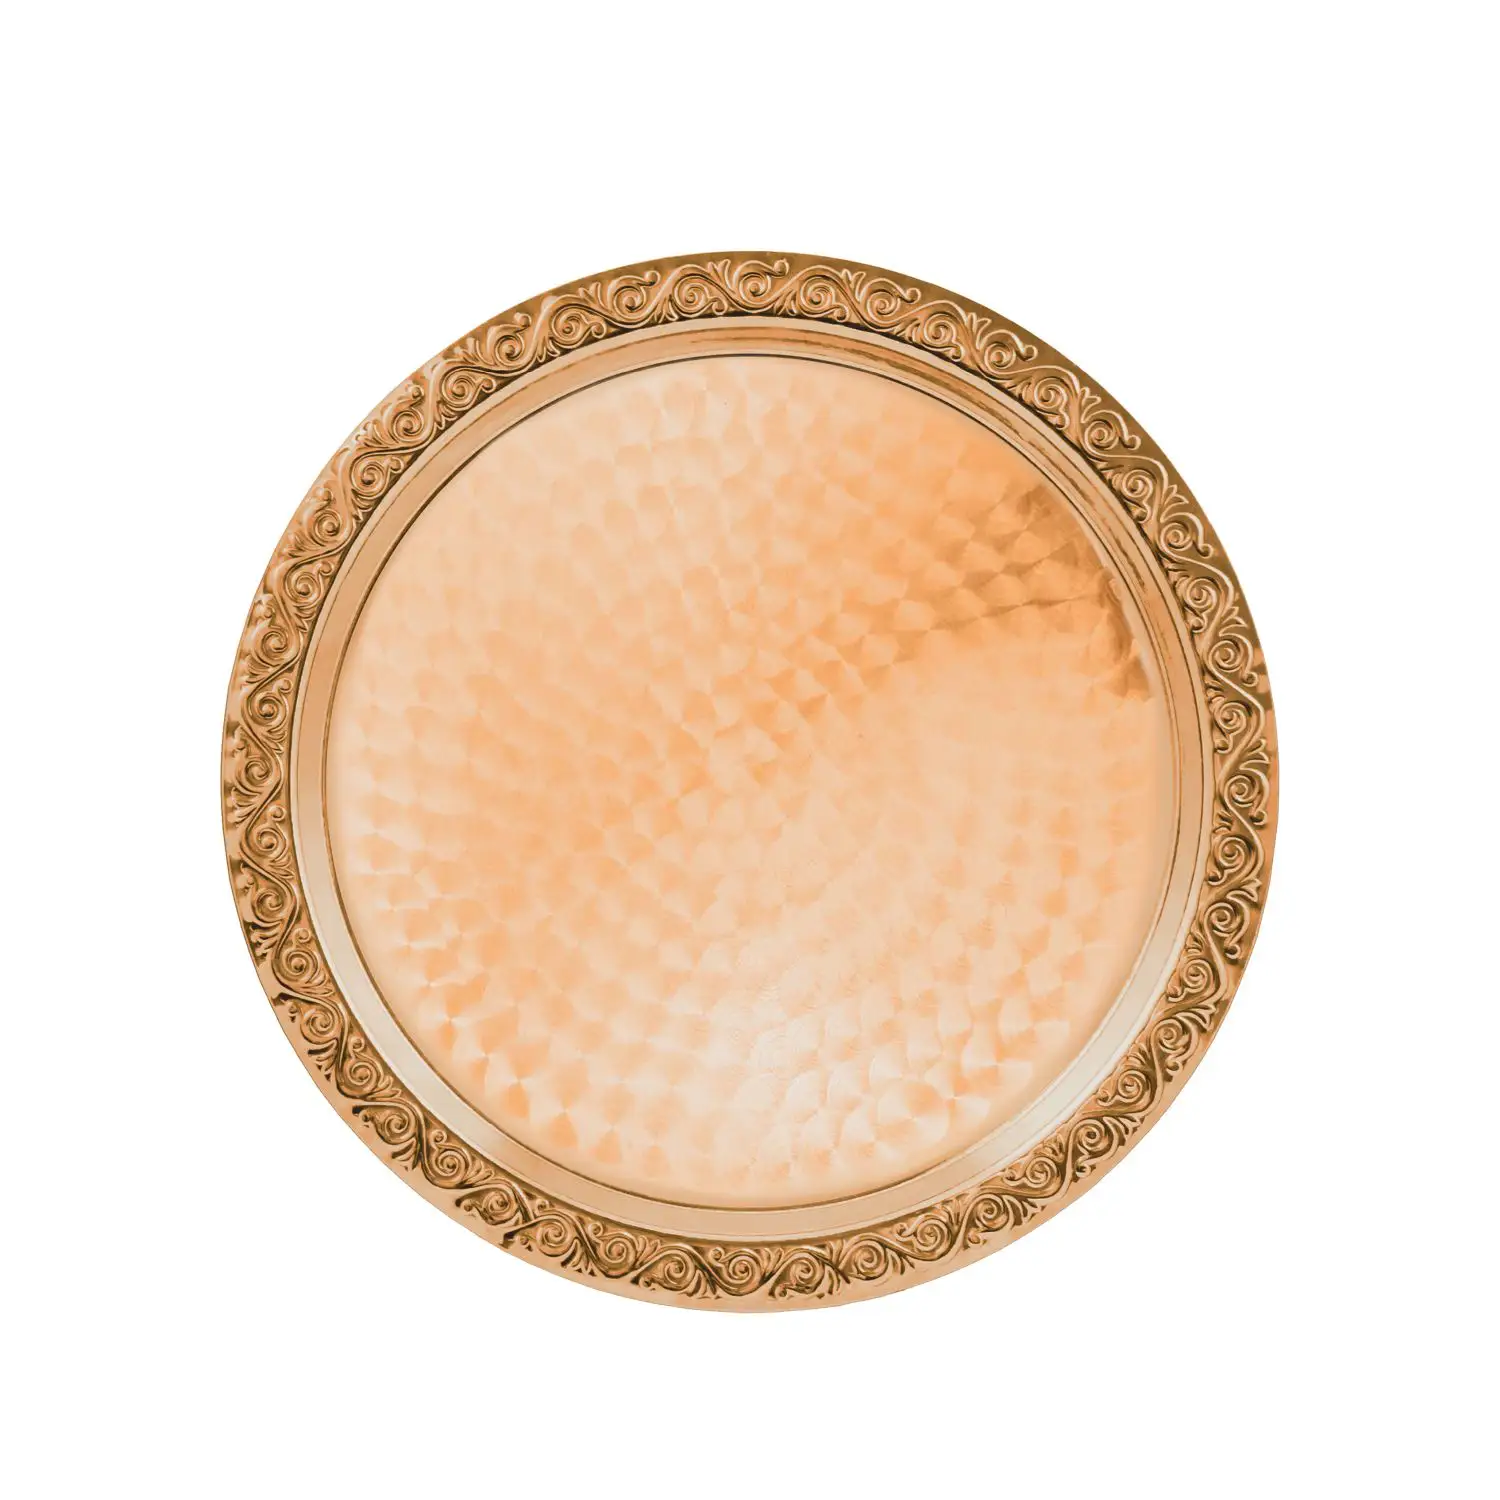 Поднос декоративный круглый с гравированным рисунком медный поднос декоративный круглый с лаз гравировкой колокольчики медный